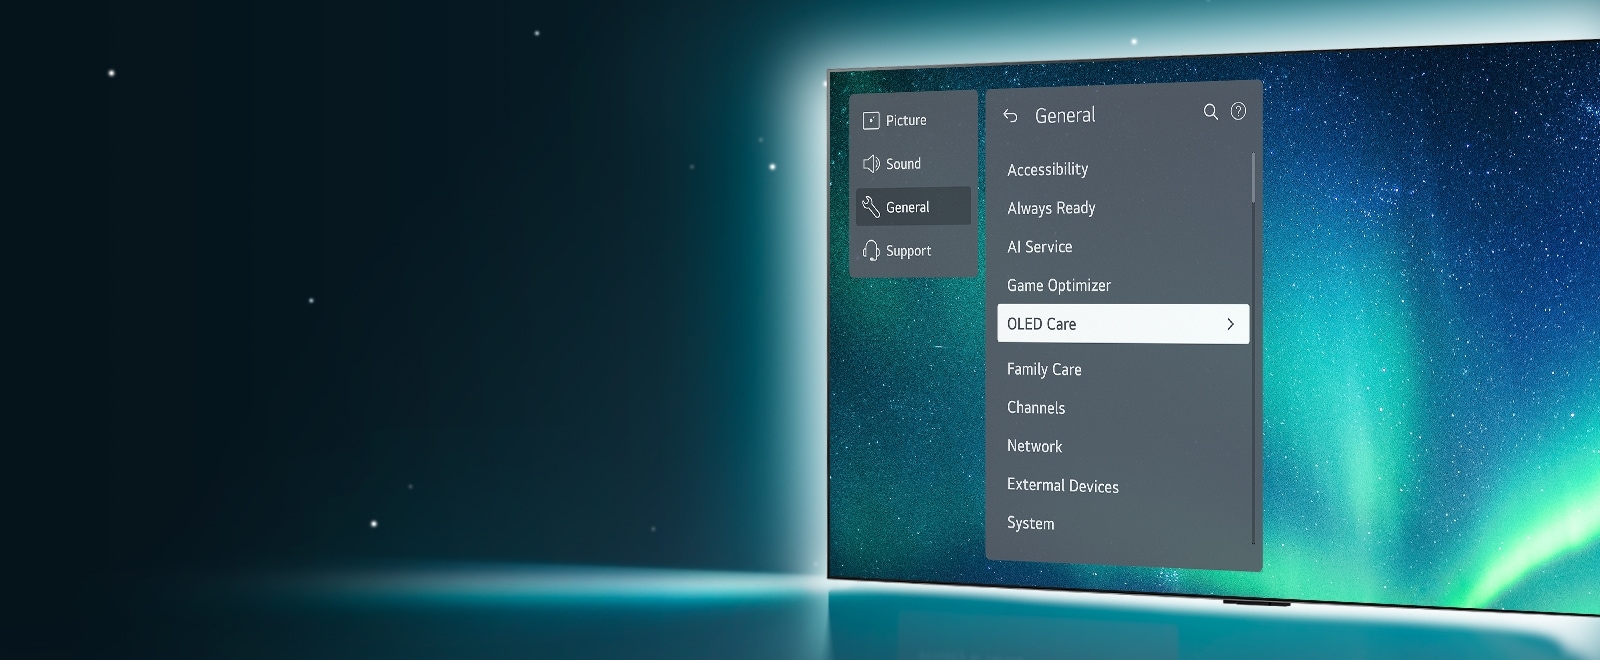 Le OLED TV se trouve à droite de l'image. Le menu Support s'affiche à l'écran et le menu OLED Care est sélectionné.